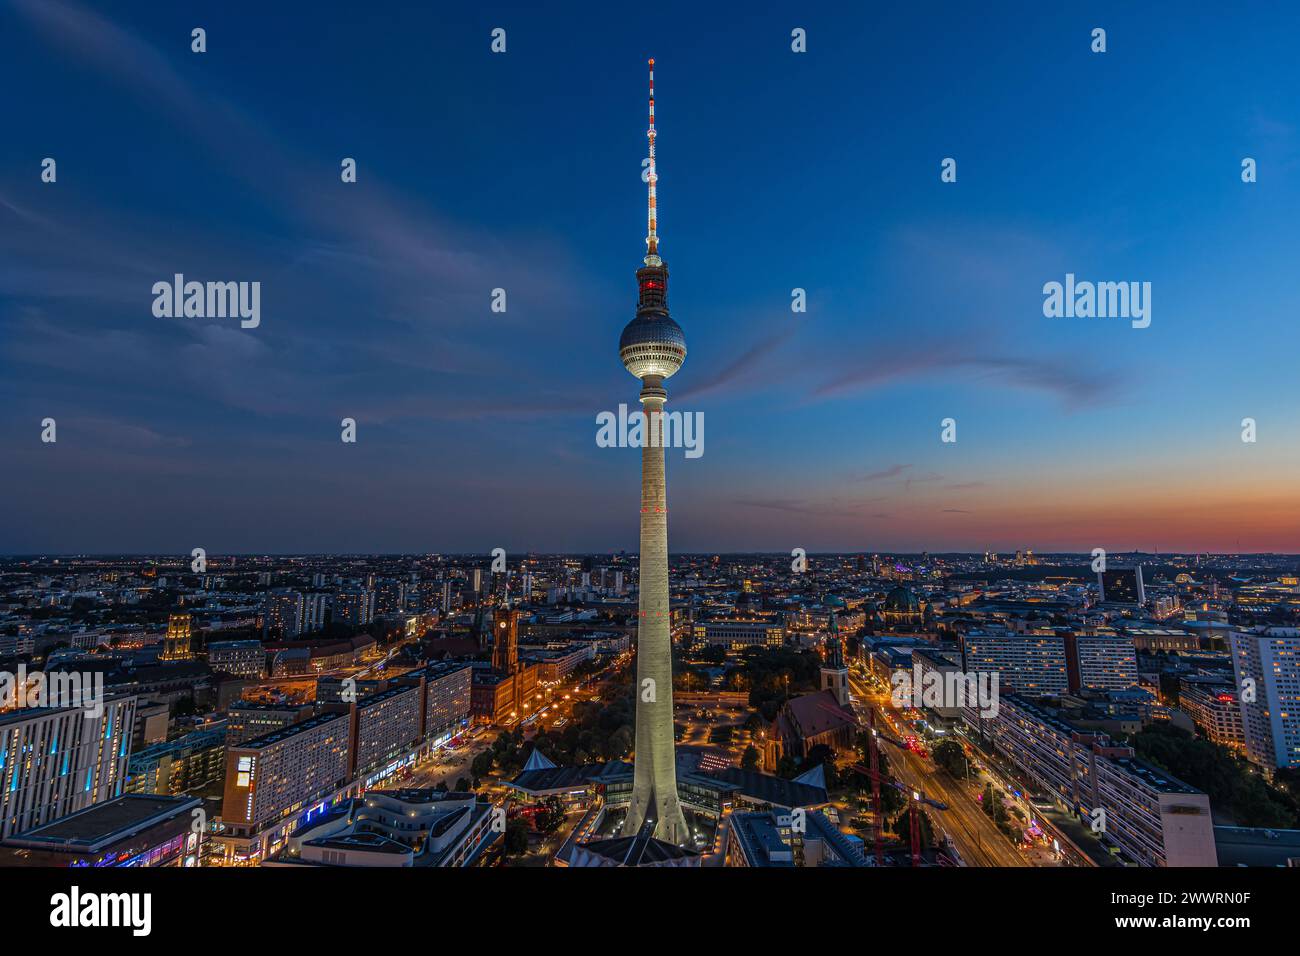 Abendstimmung der Berliner Skyline zur blauen Stunde. Beleuchteter Fernsehturm am Alexanderplatz im Zentrum der deutschen Hauptstadt. Illuminat Stockfoto